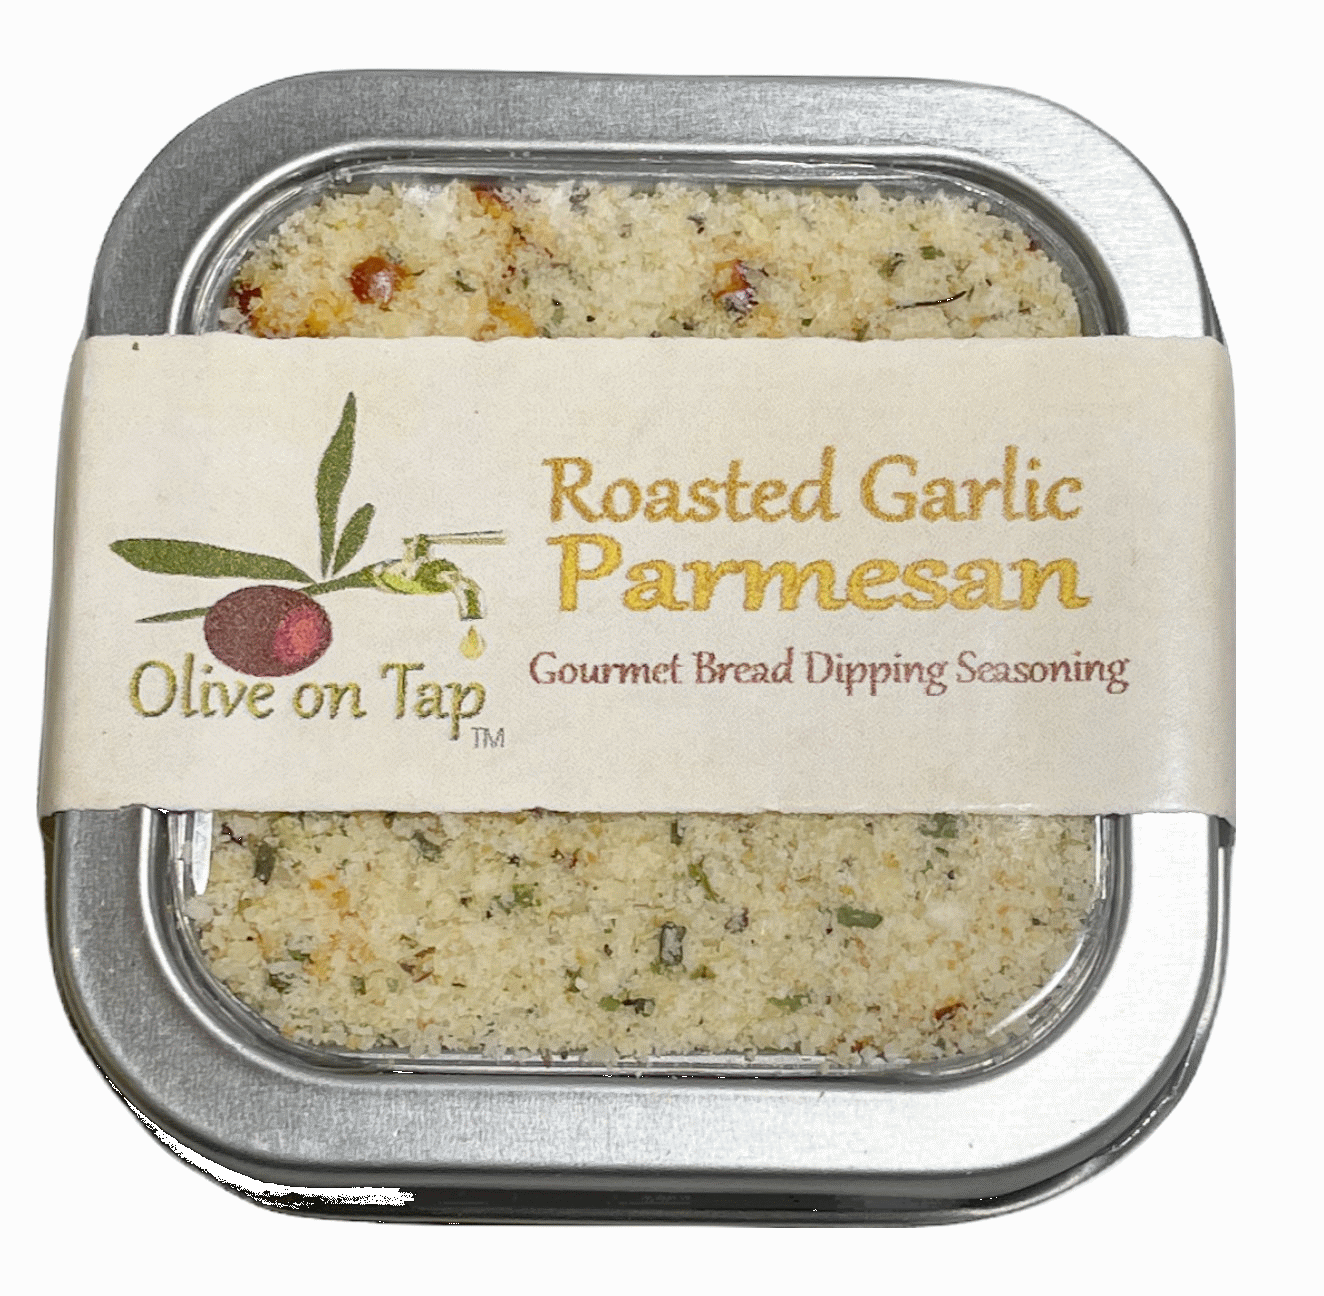 Olive on Tap Garlic Parmesan Dipping Seasoning